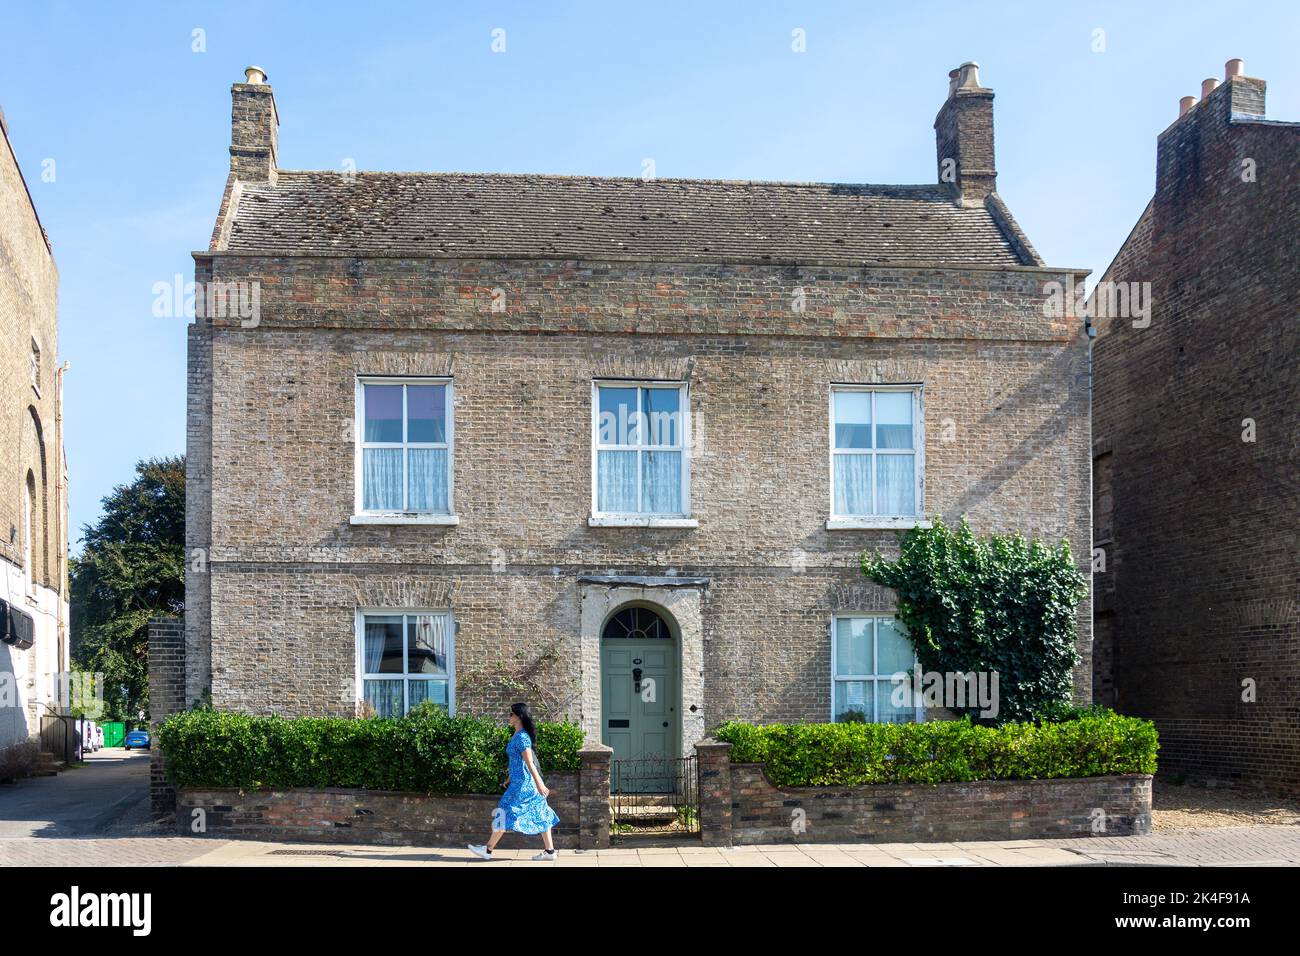 Maison géorgienne, High Street, Mars, Cambridgeshire, Angleterre, Royaume-Uni Banque D'Images